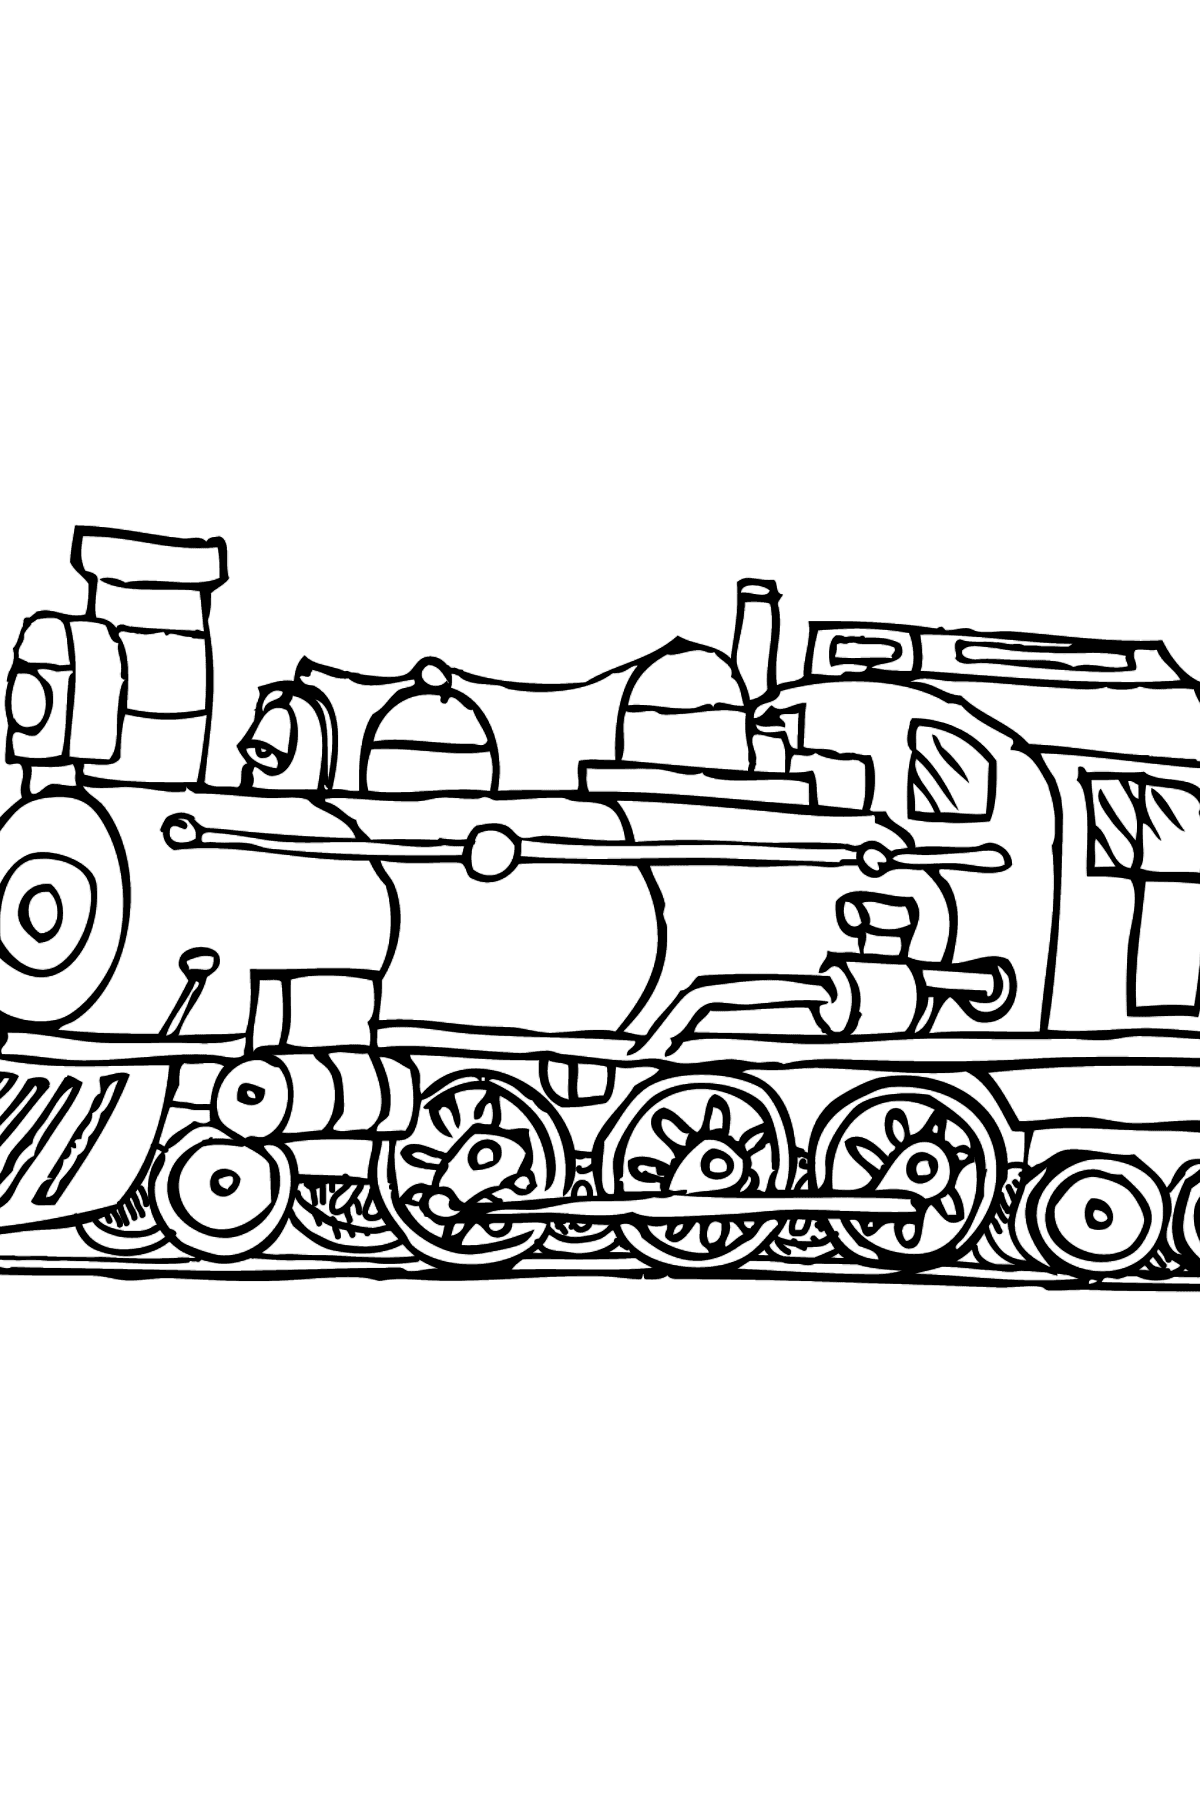 Tegning til fargelegging lokomotiv - Tegninger til fargelegging for barn